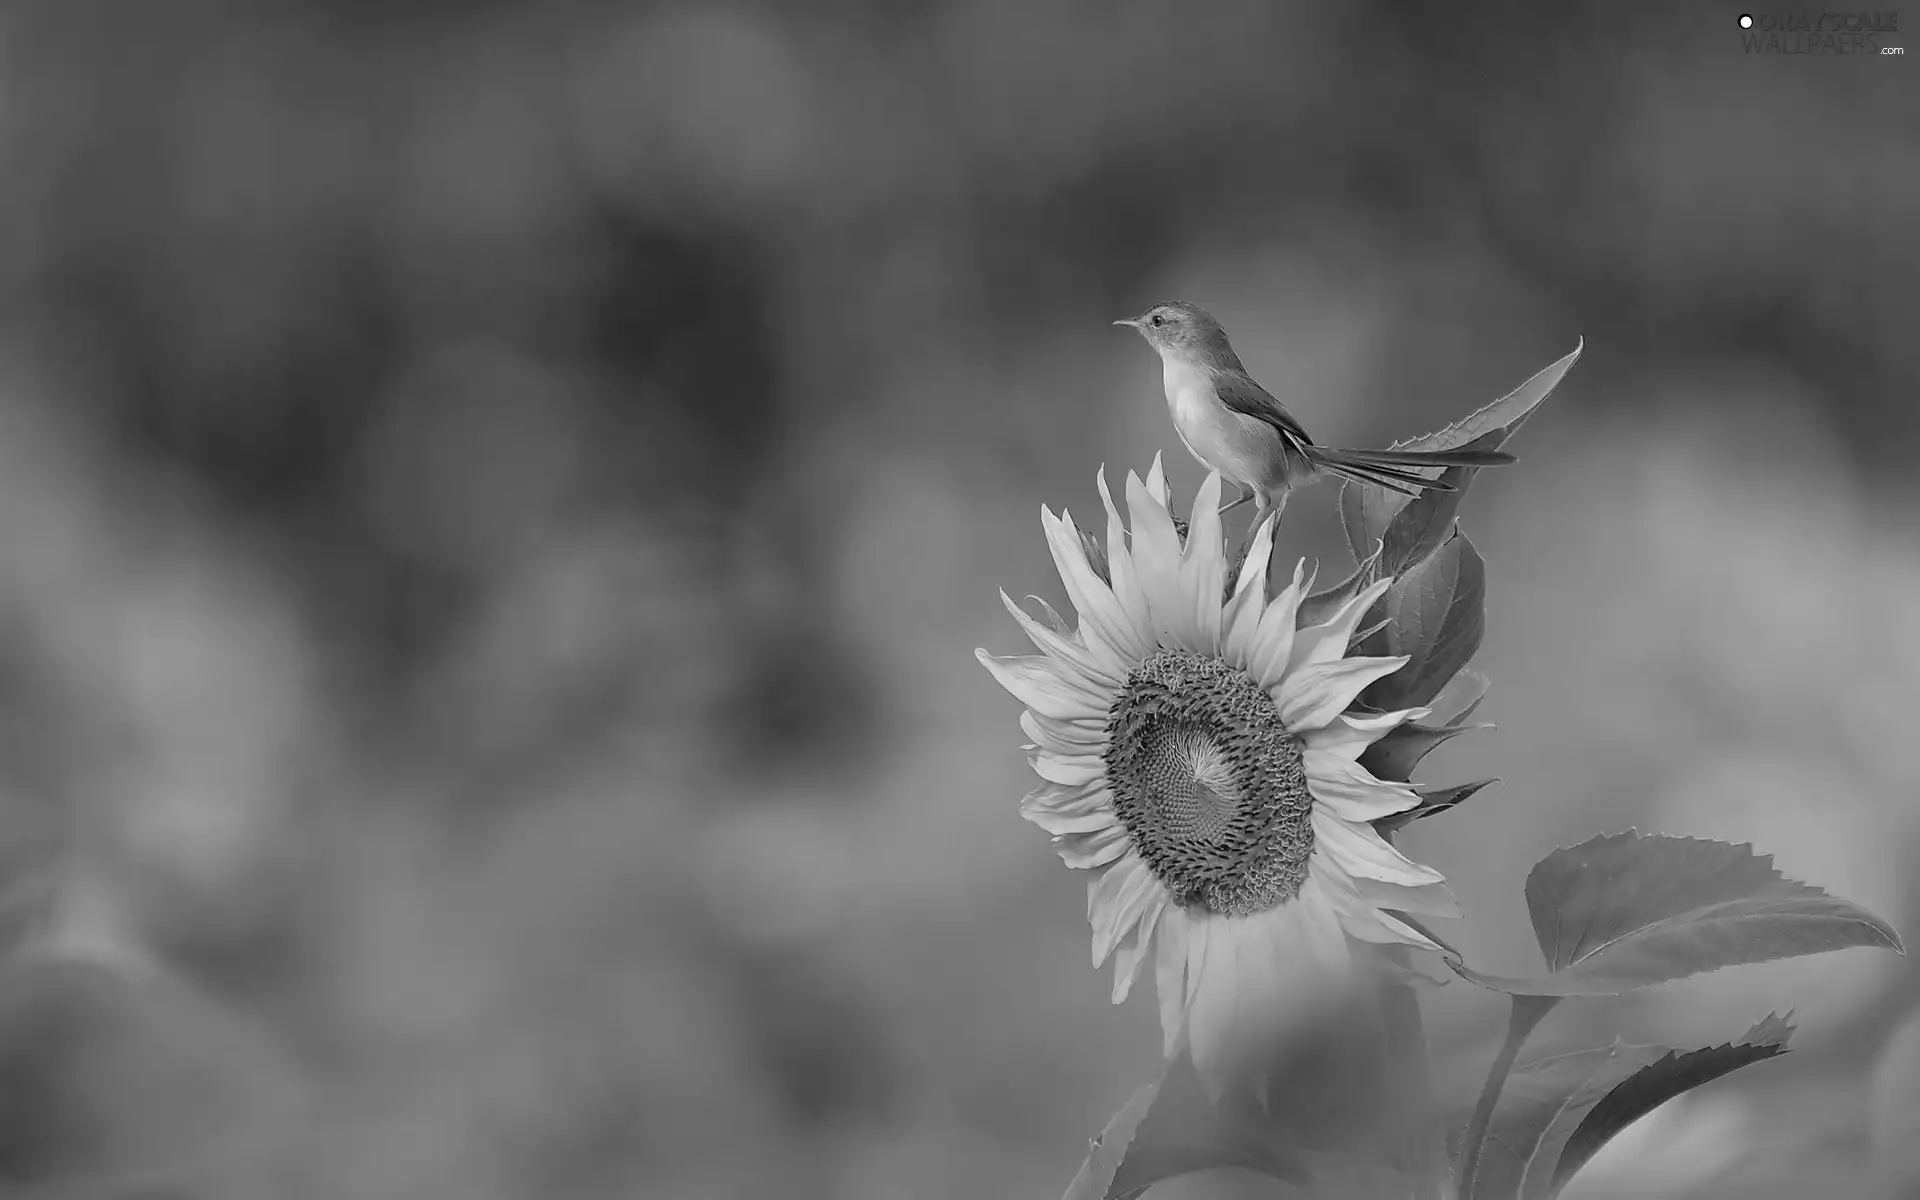 Close, Sunflower, birdies